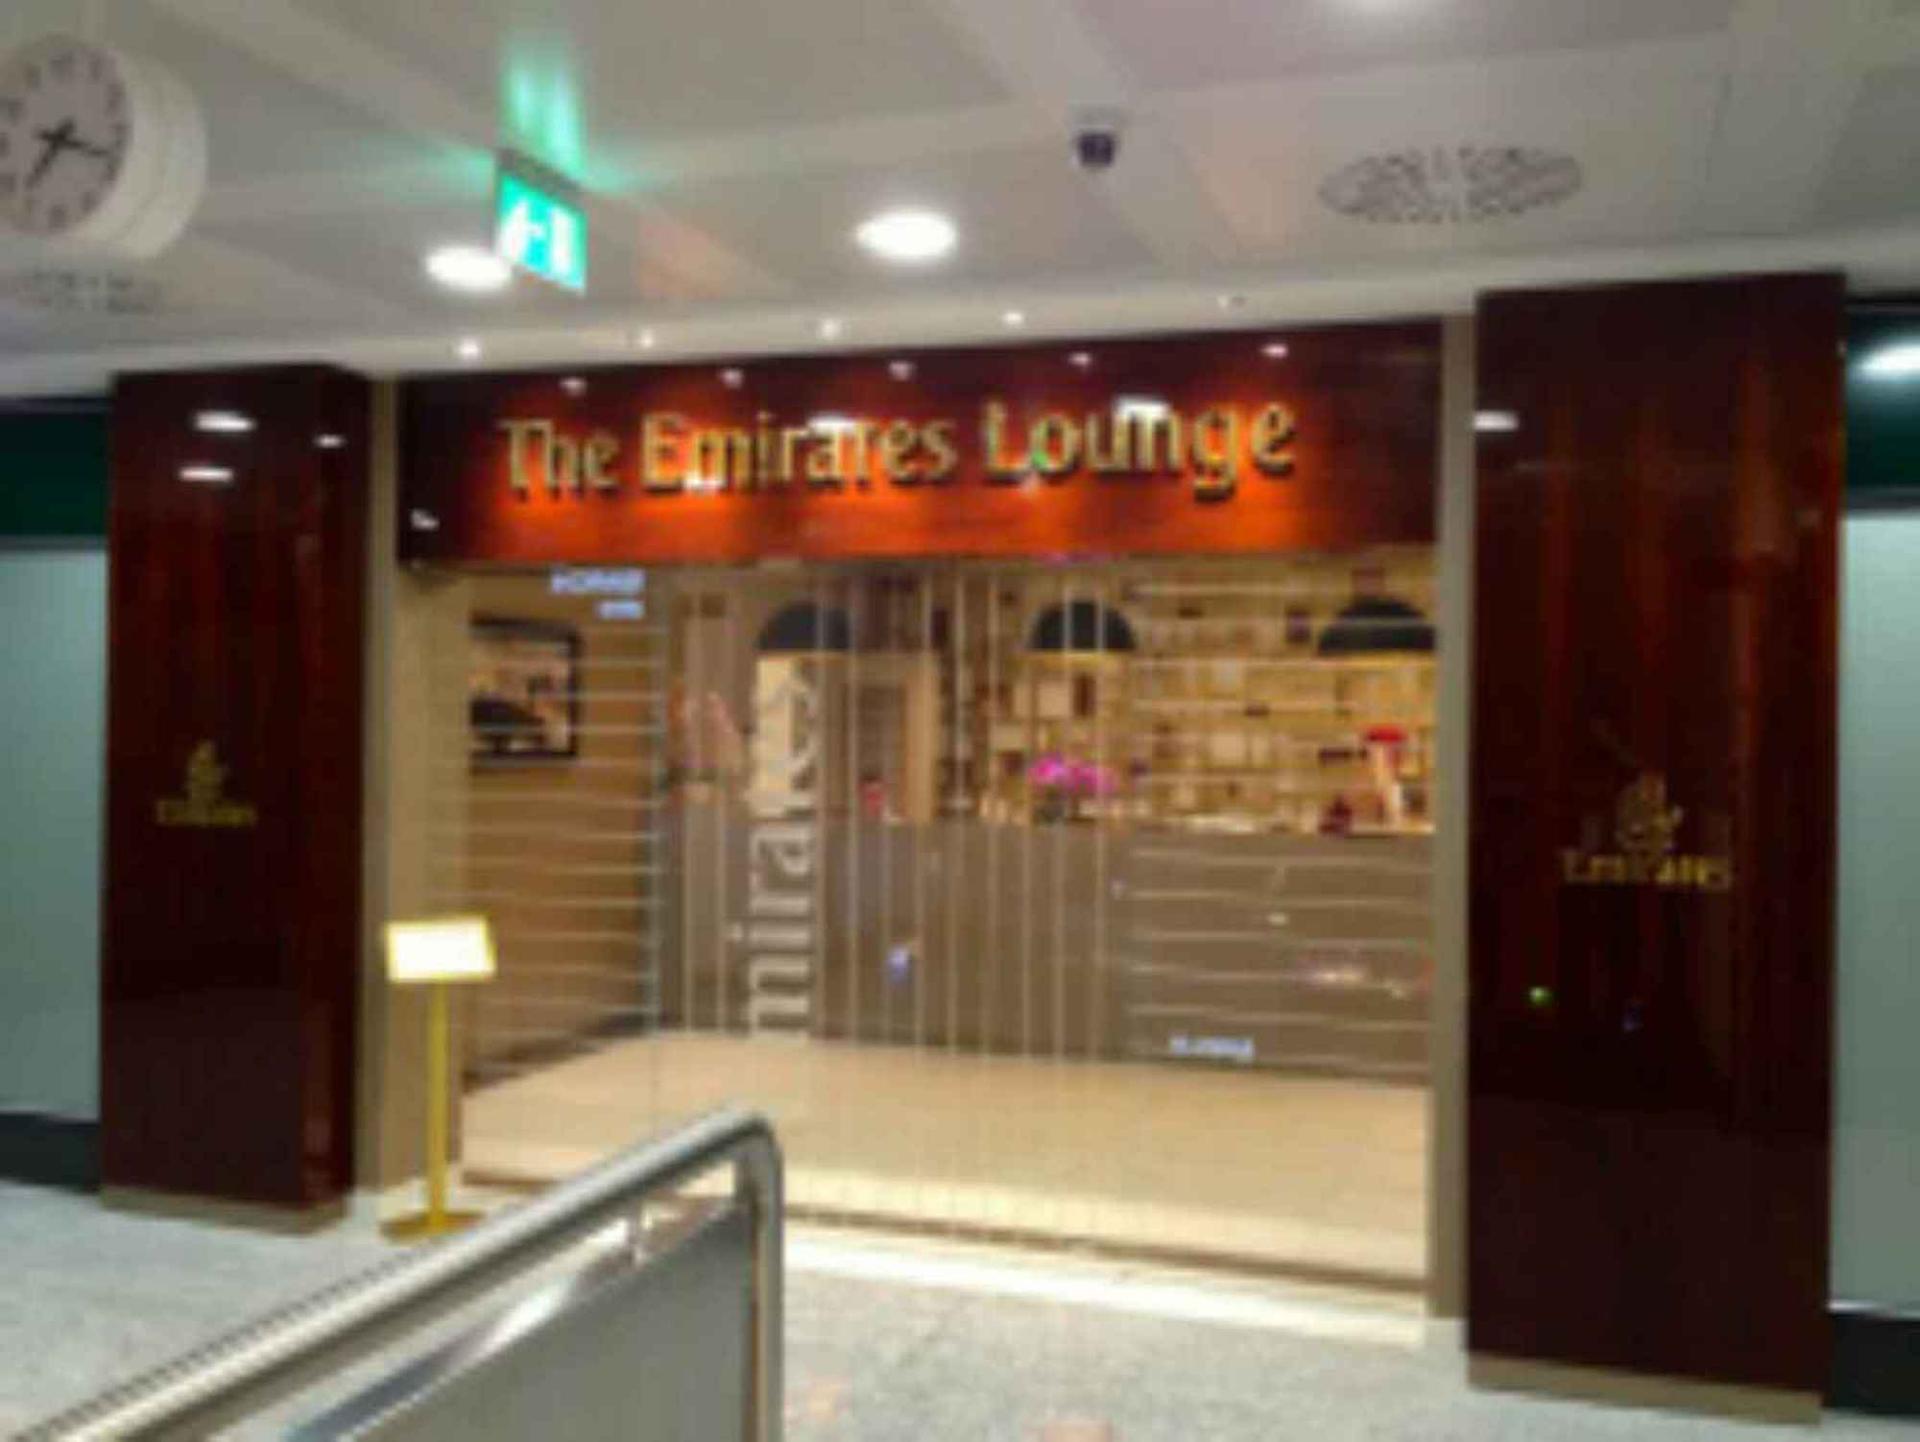 The Emirates Lounge image 4 of 13